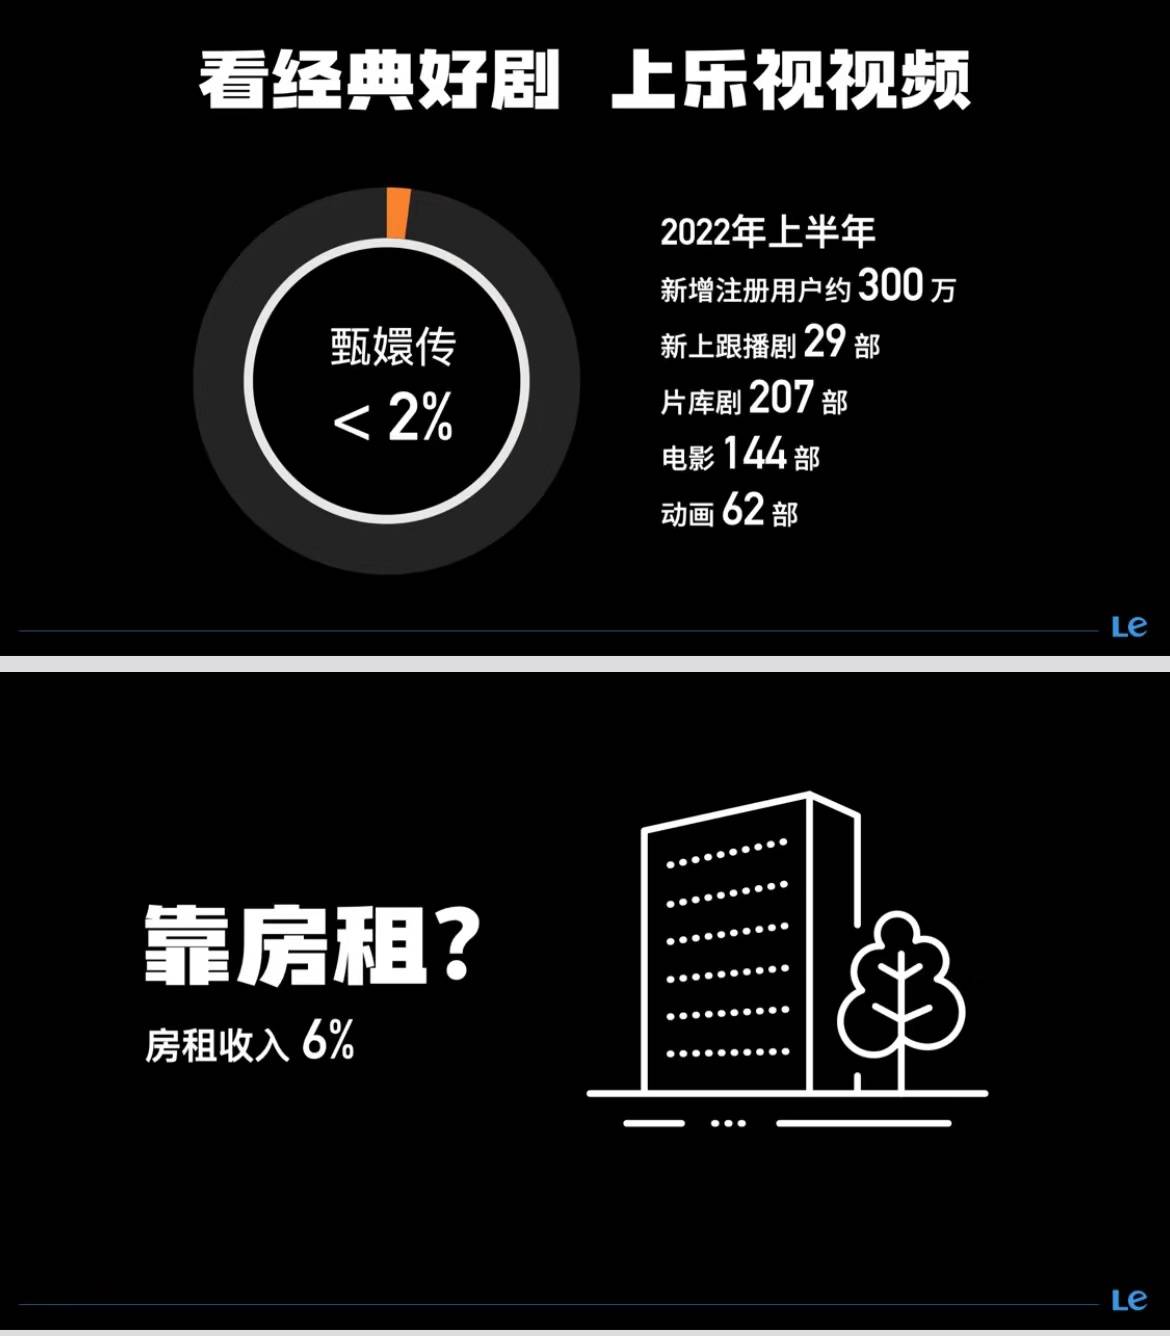 leshi3 - In che modo LeTV, che deve più di 20 miliardi di yuan, è diventata una “società fatata” con un sistema di lavoro di 4,5 giorni?